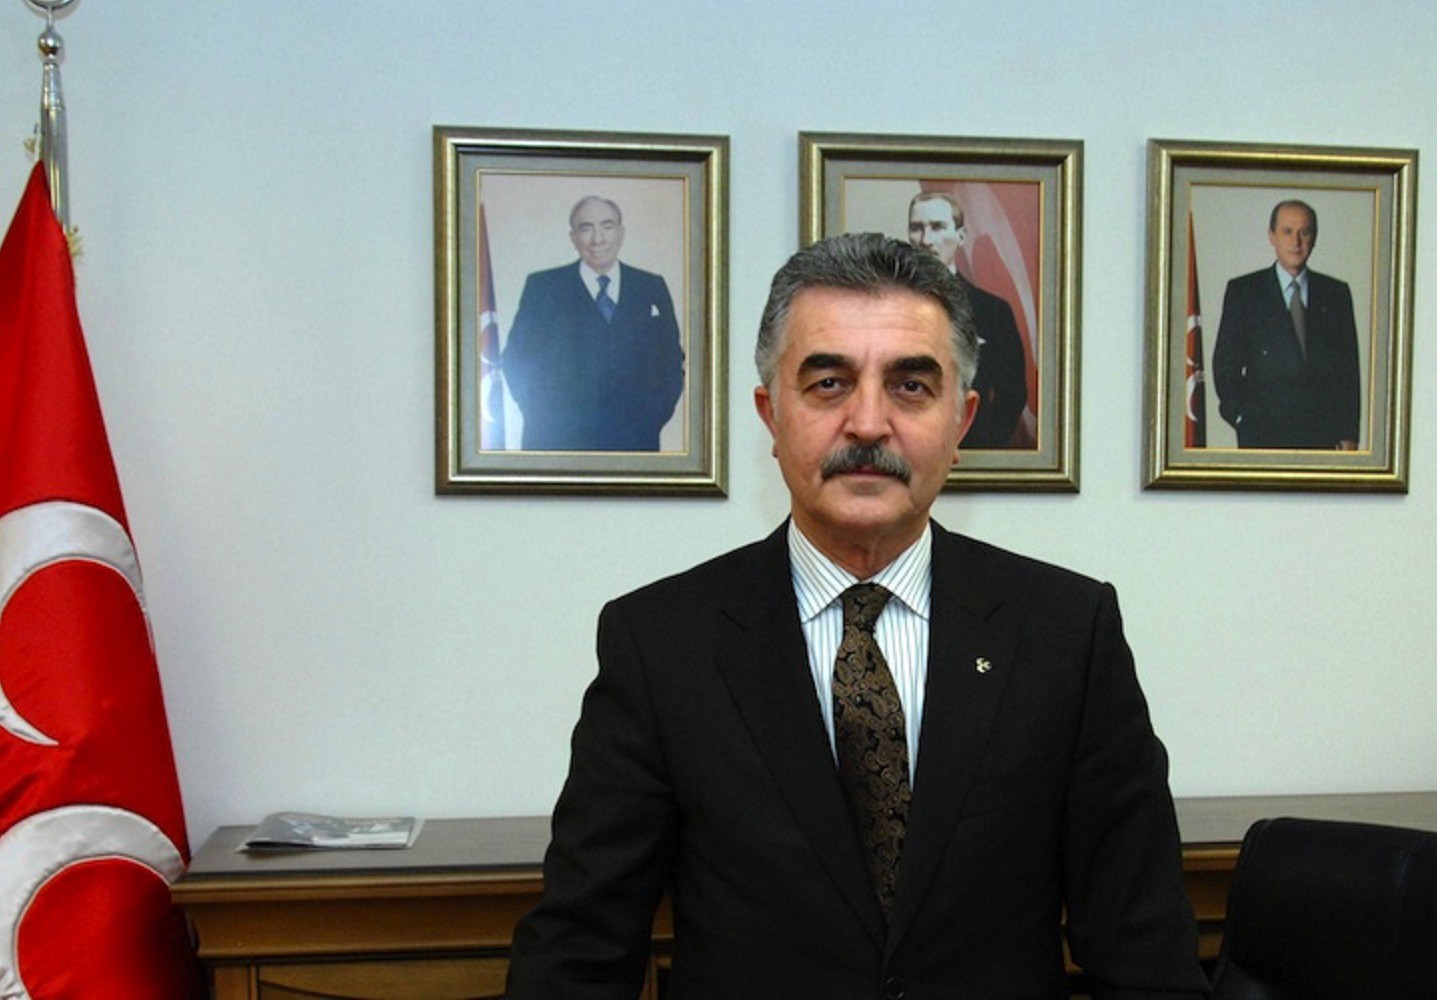 MHP Genel Sekreteri Büyükataman'dan Kılıçdaroğlu’na sert sözler: "Milliyetçilikten bahsetmesi haddi değildir"